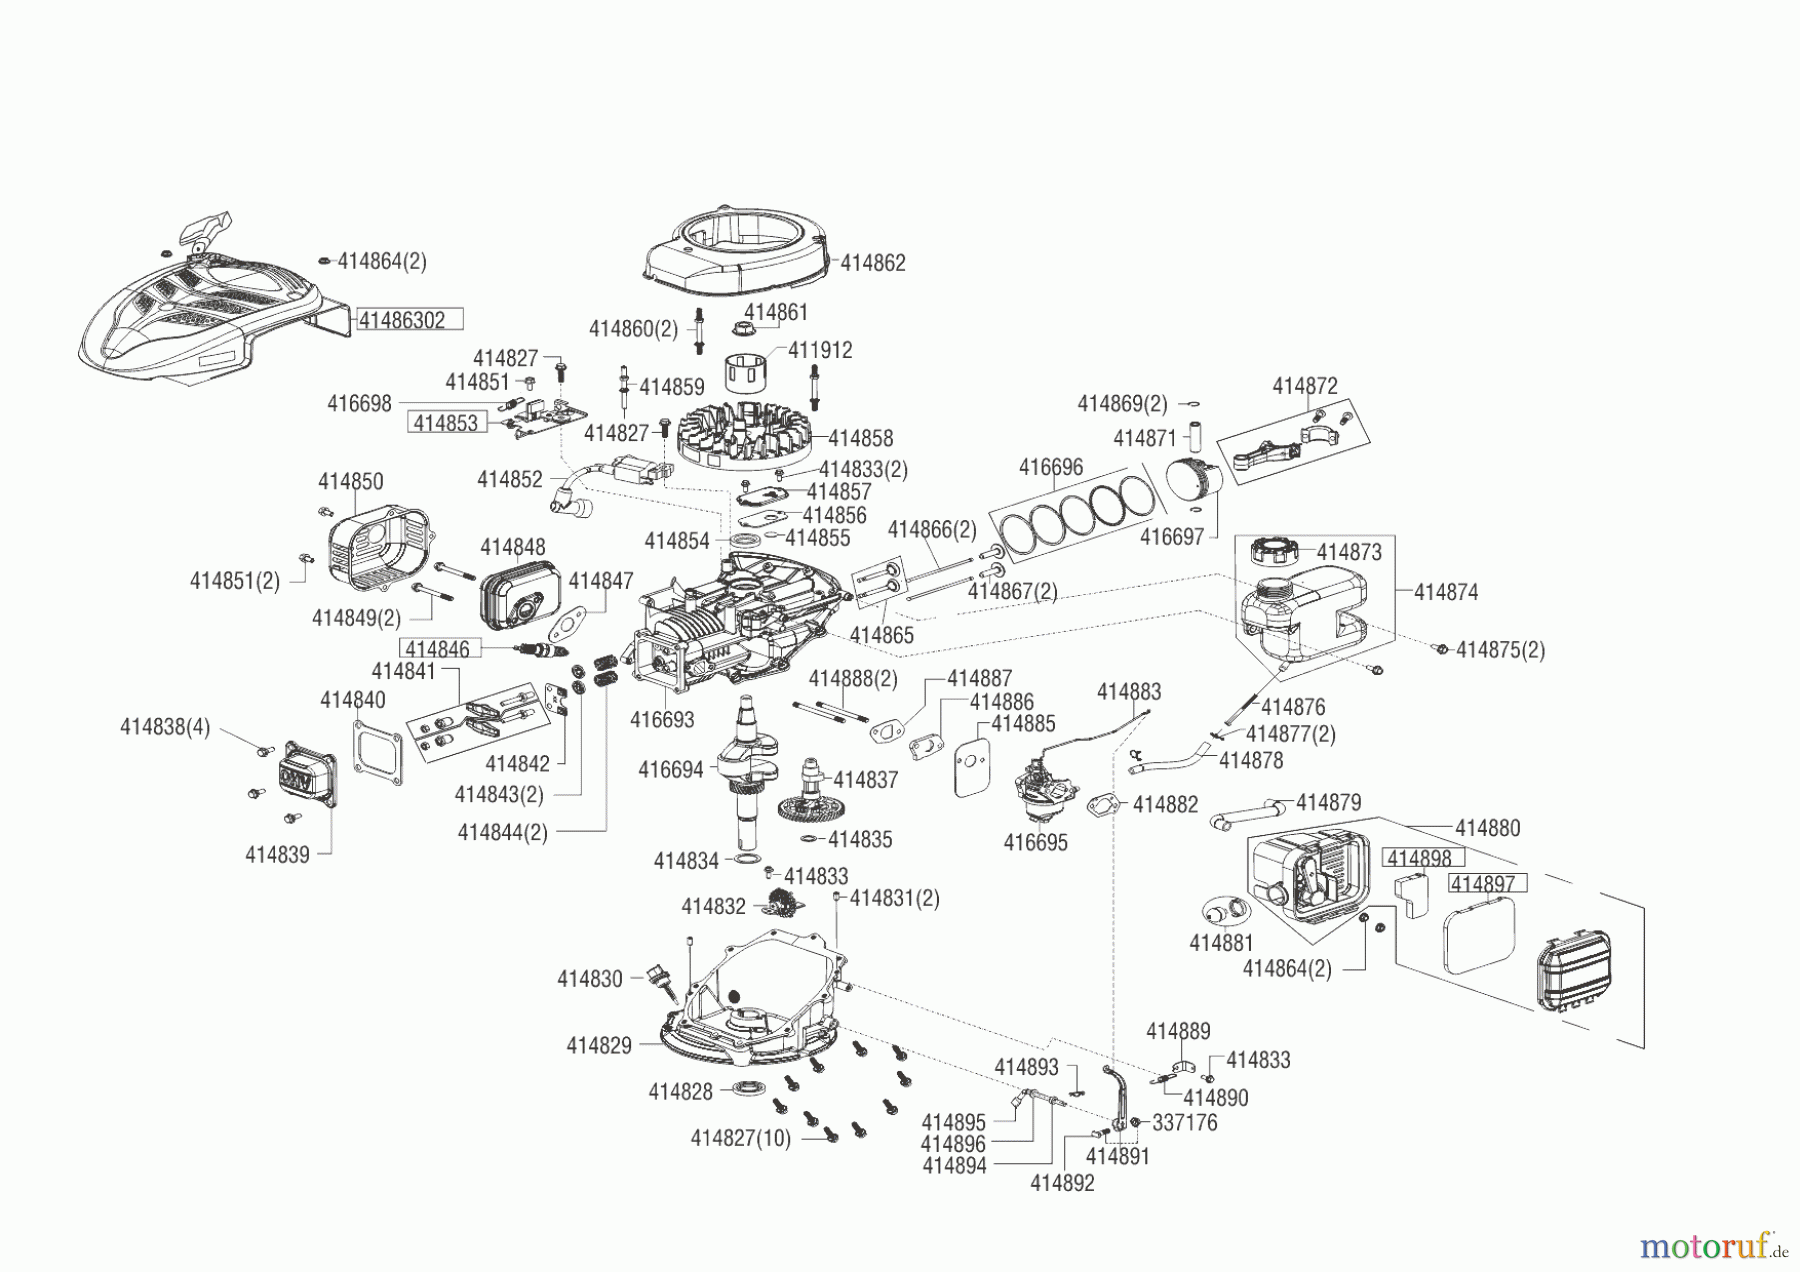  AL-KO Gartentechnik Benzinmotoren B-MOTOR LC1P65 FE 4PS R3000 WL80  08/2015 Seite 1